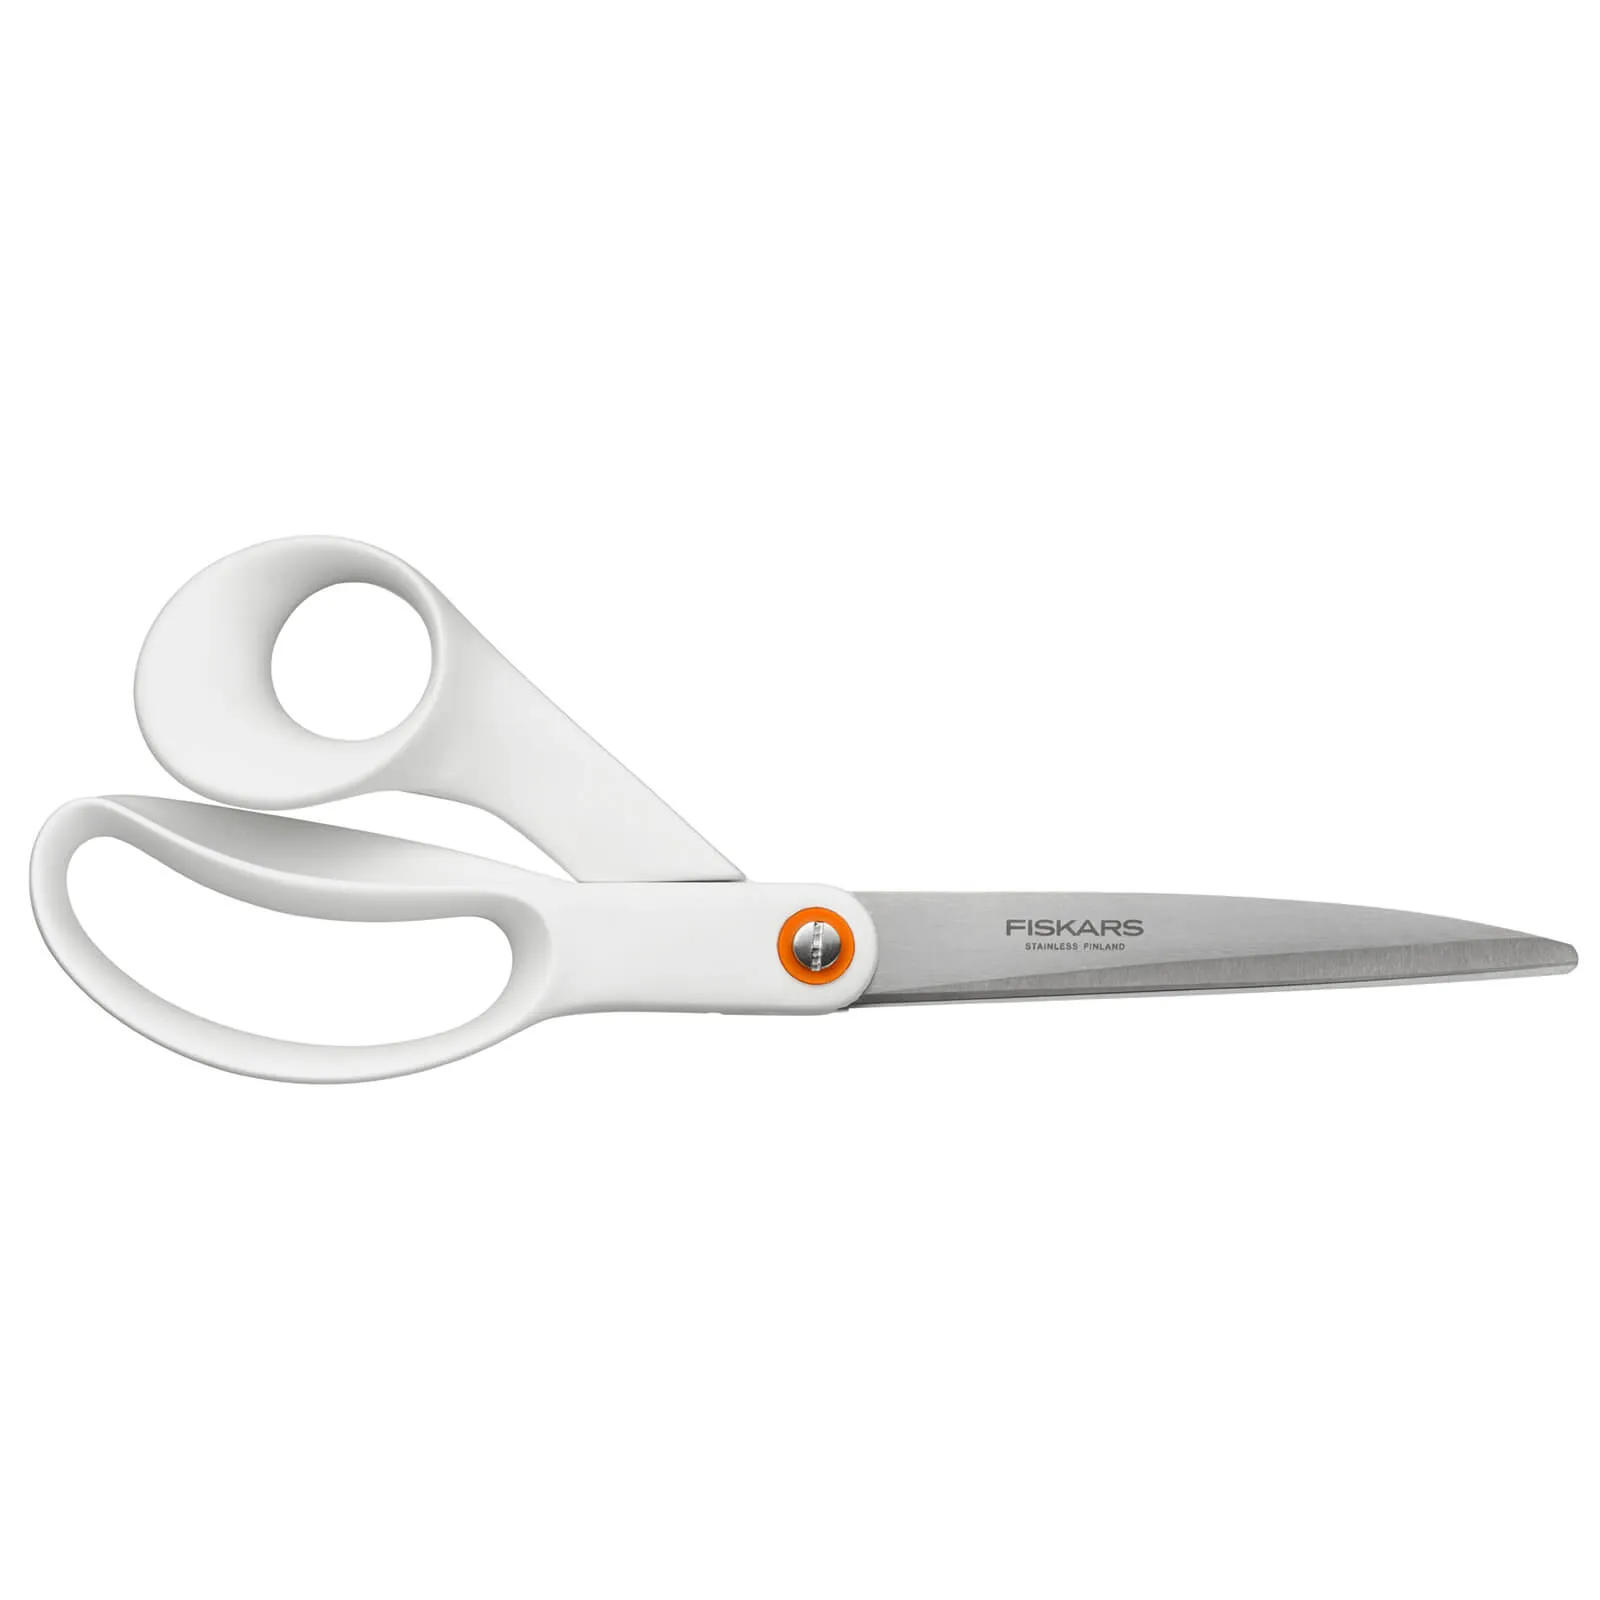 Fiskars Functional Form Large Universal Scissors - White